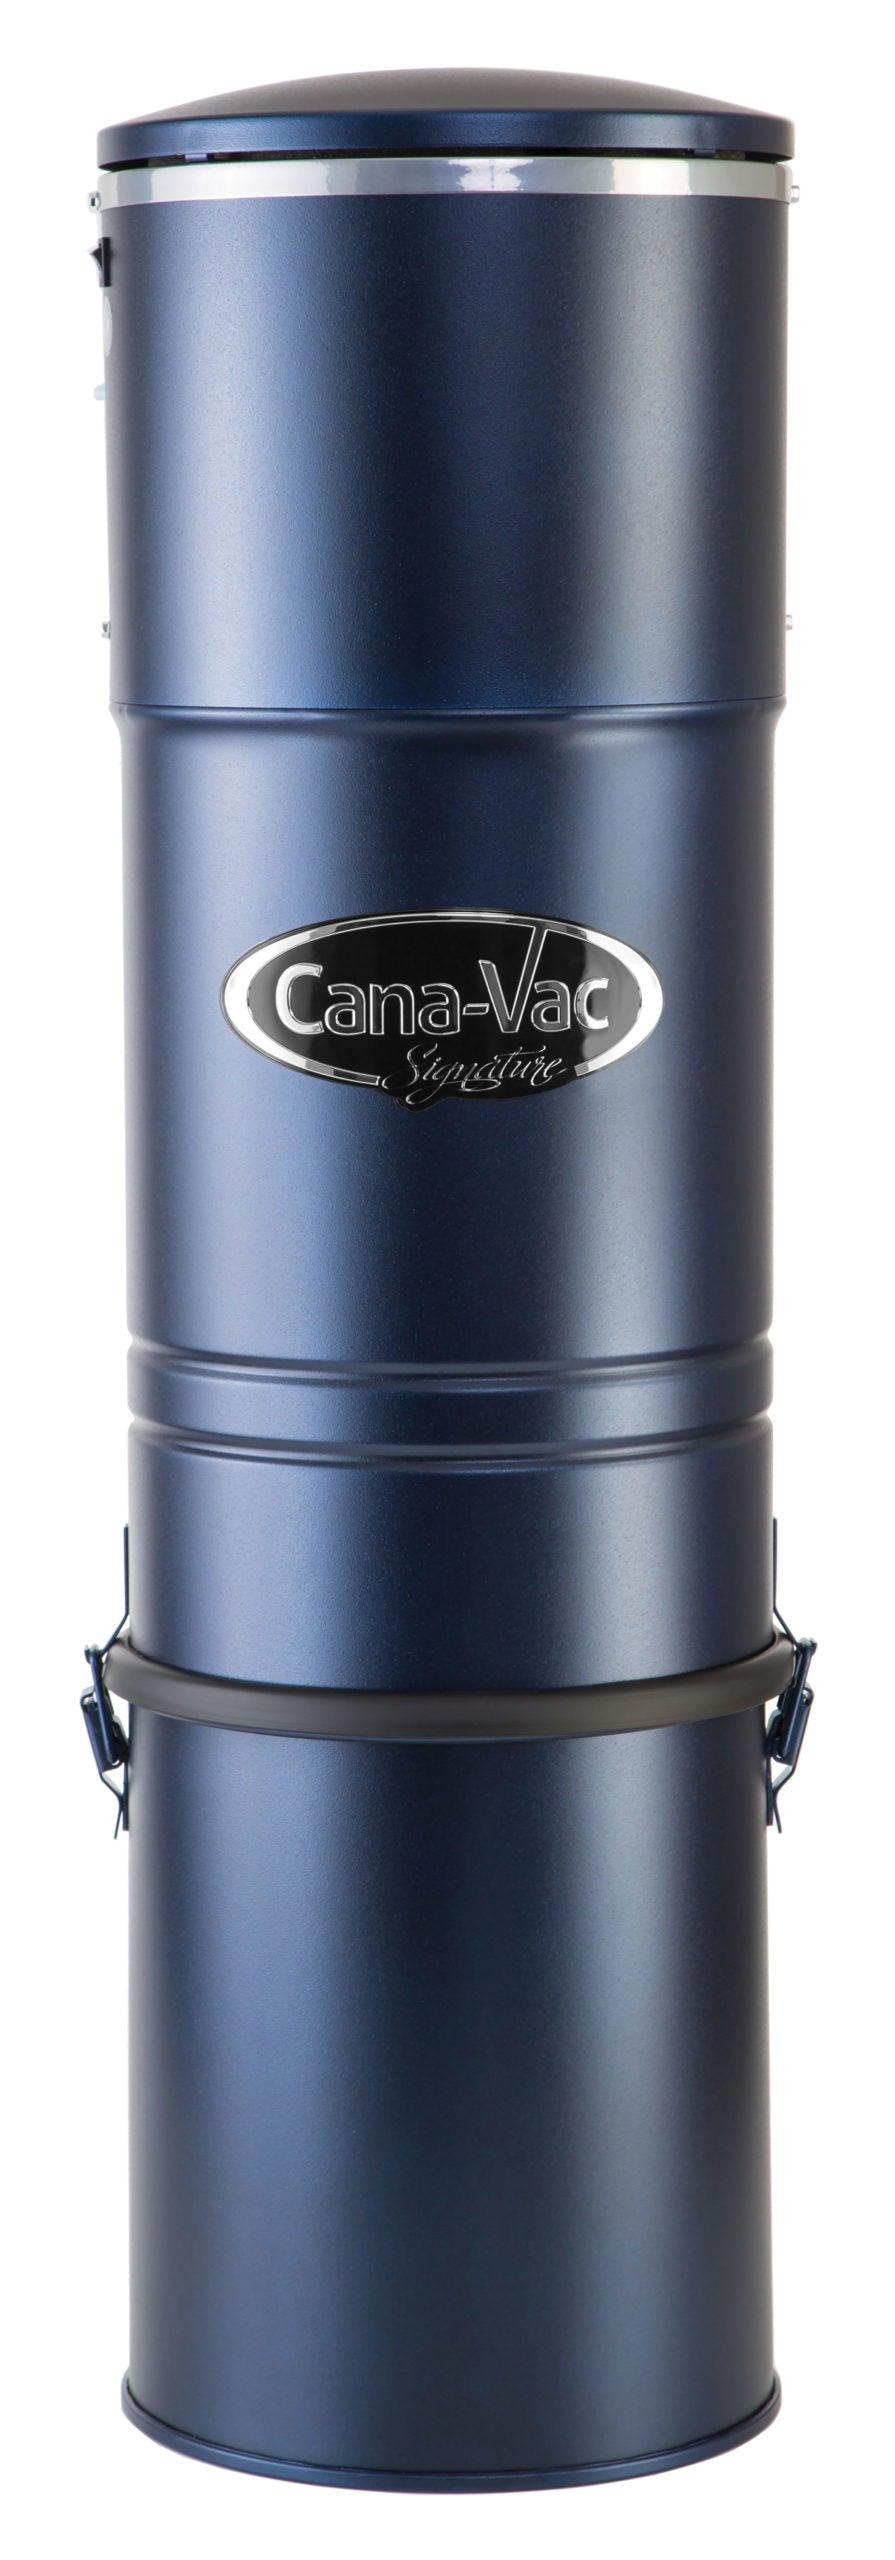 Cana-Vac LS690 Central Vacuum Unit - Geek Vacuums